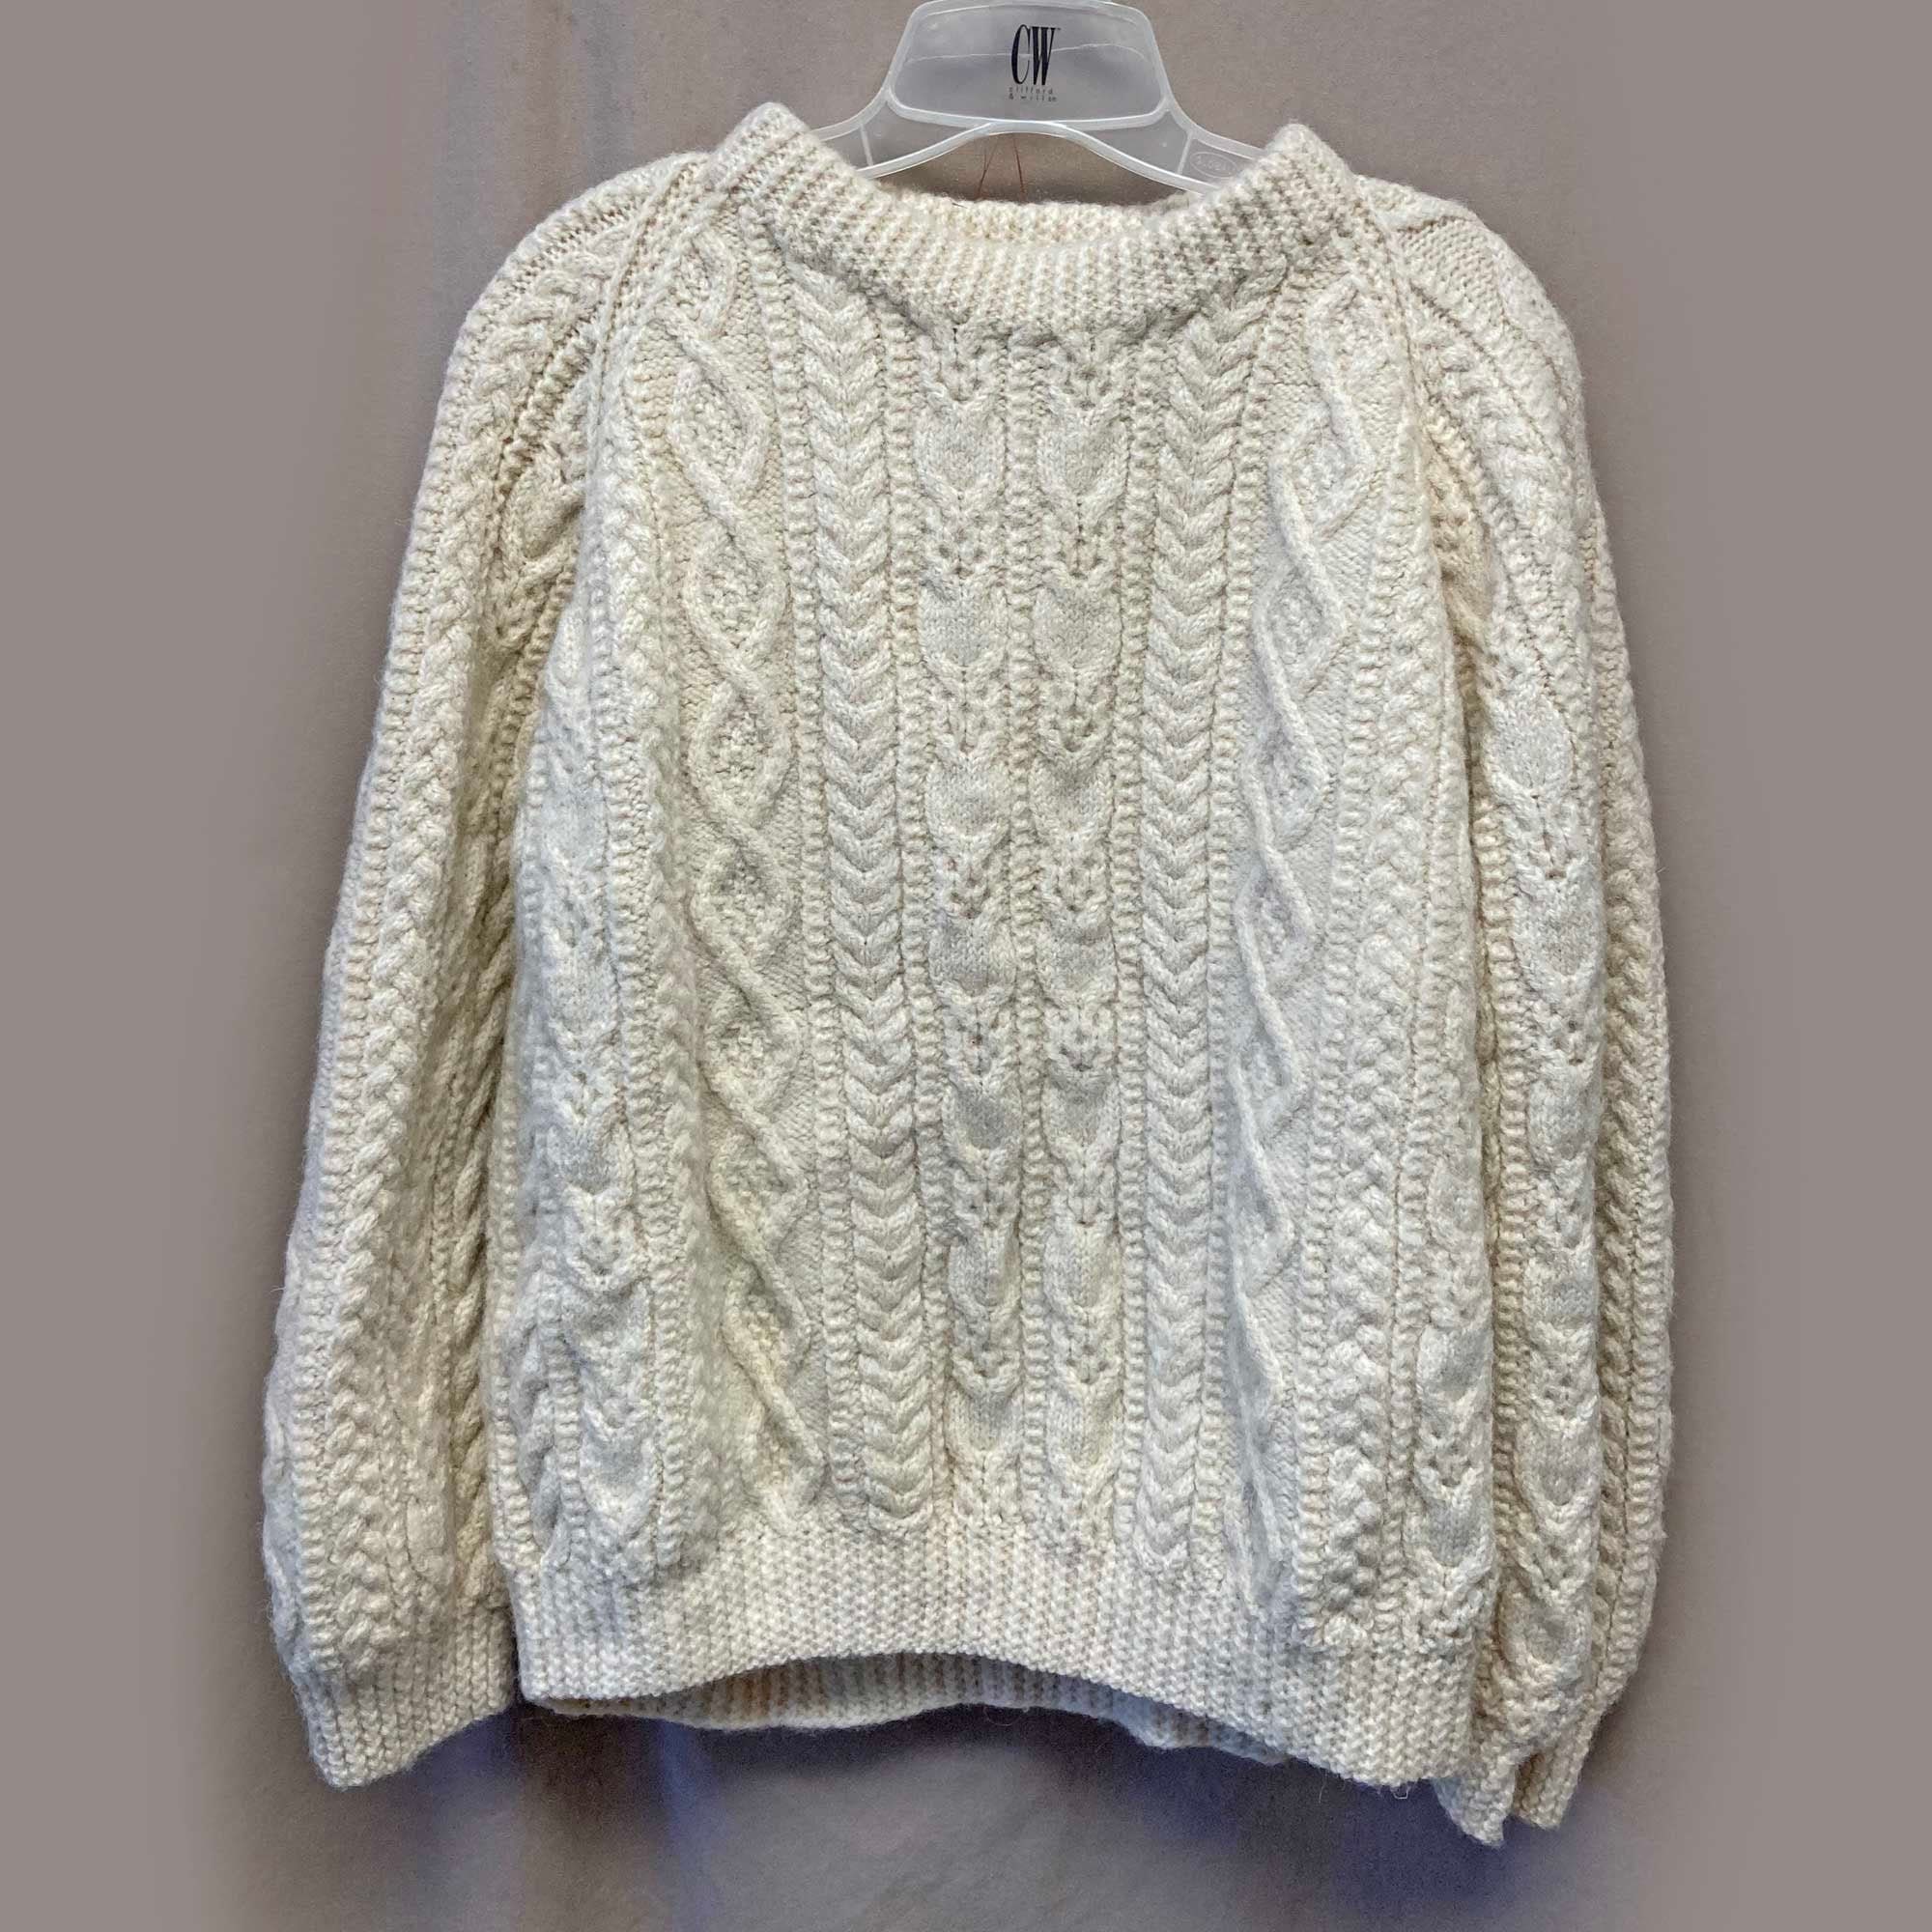 McPorter Farms Sweater Clasp - Nautical Yarn